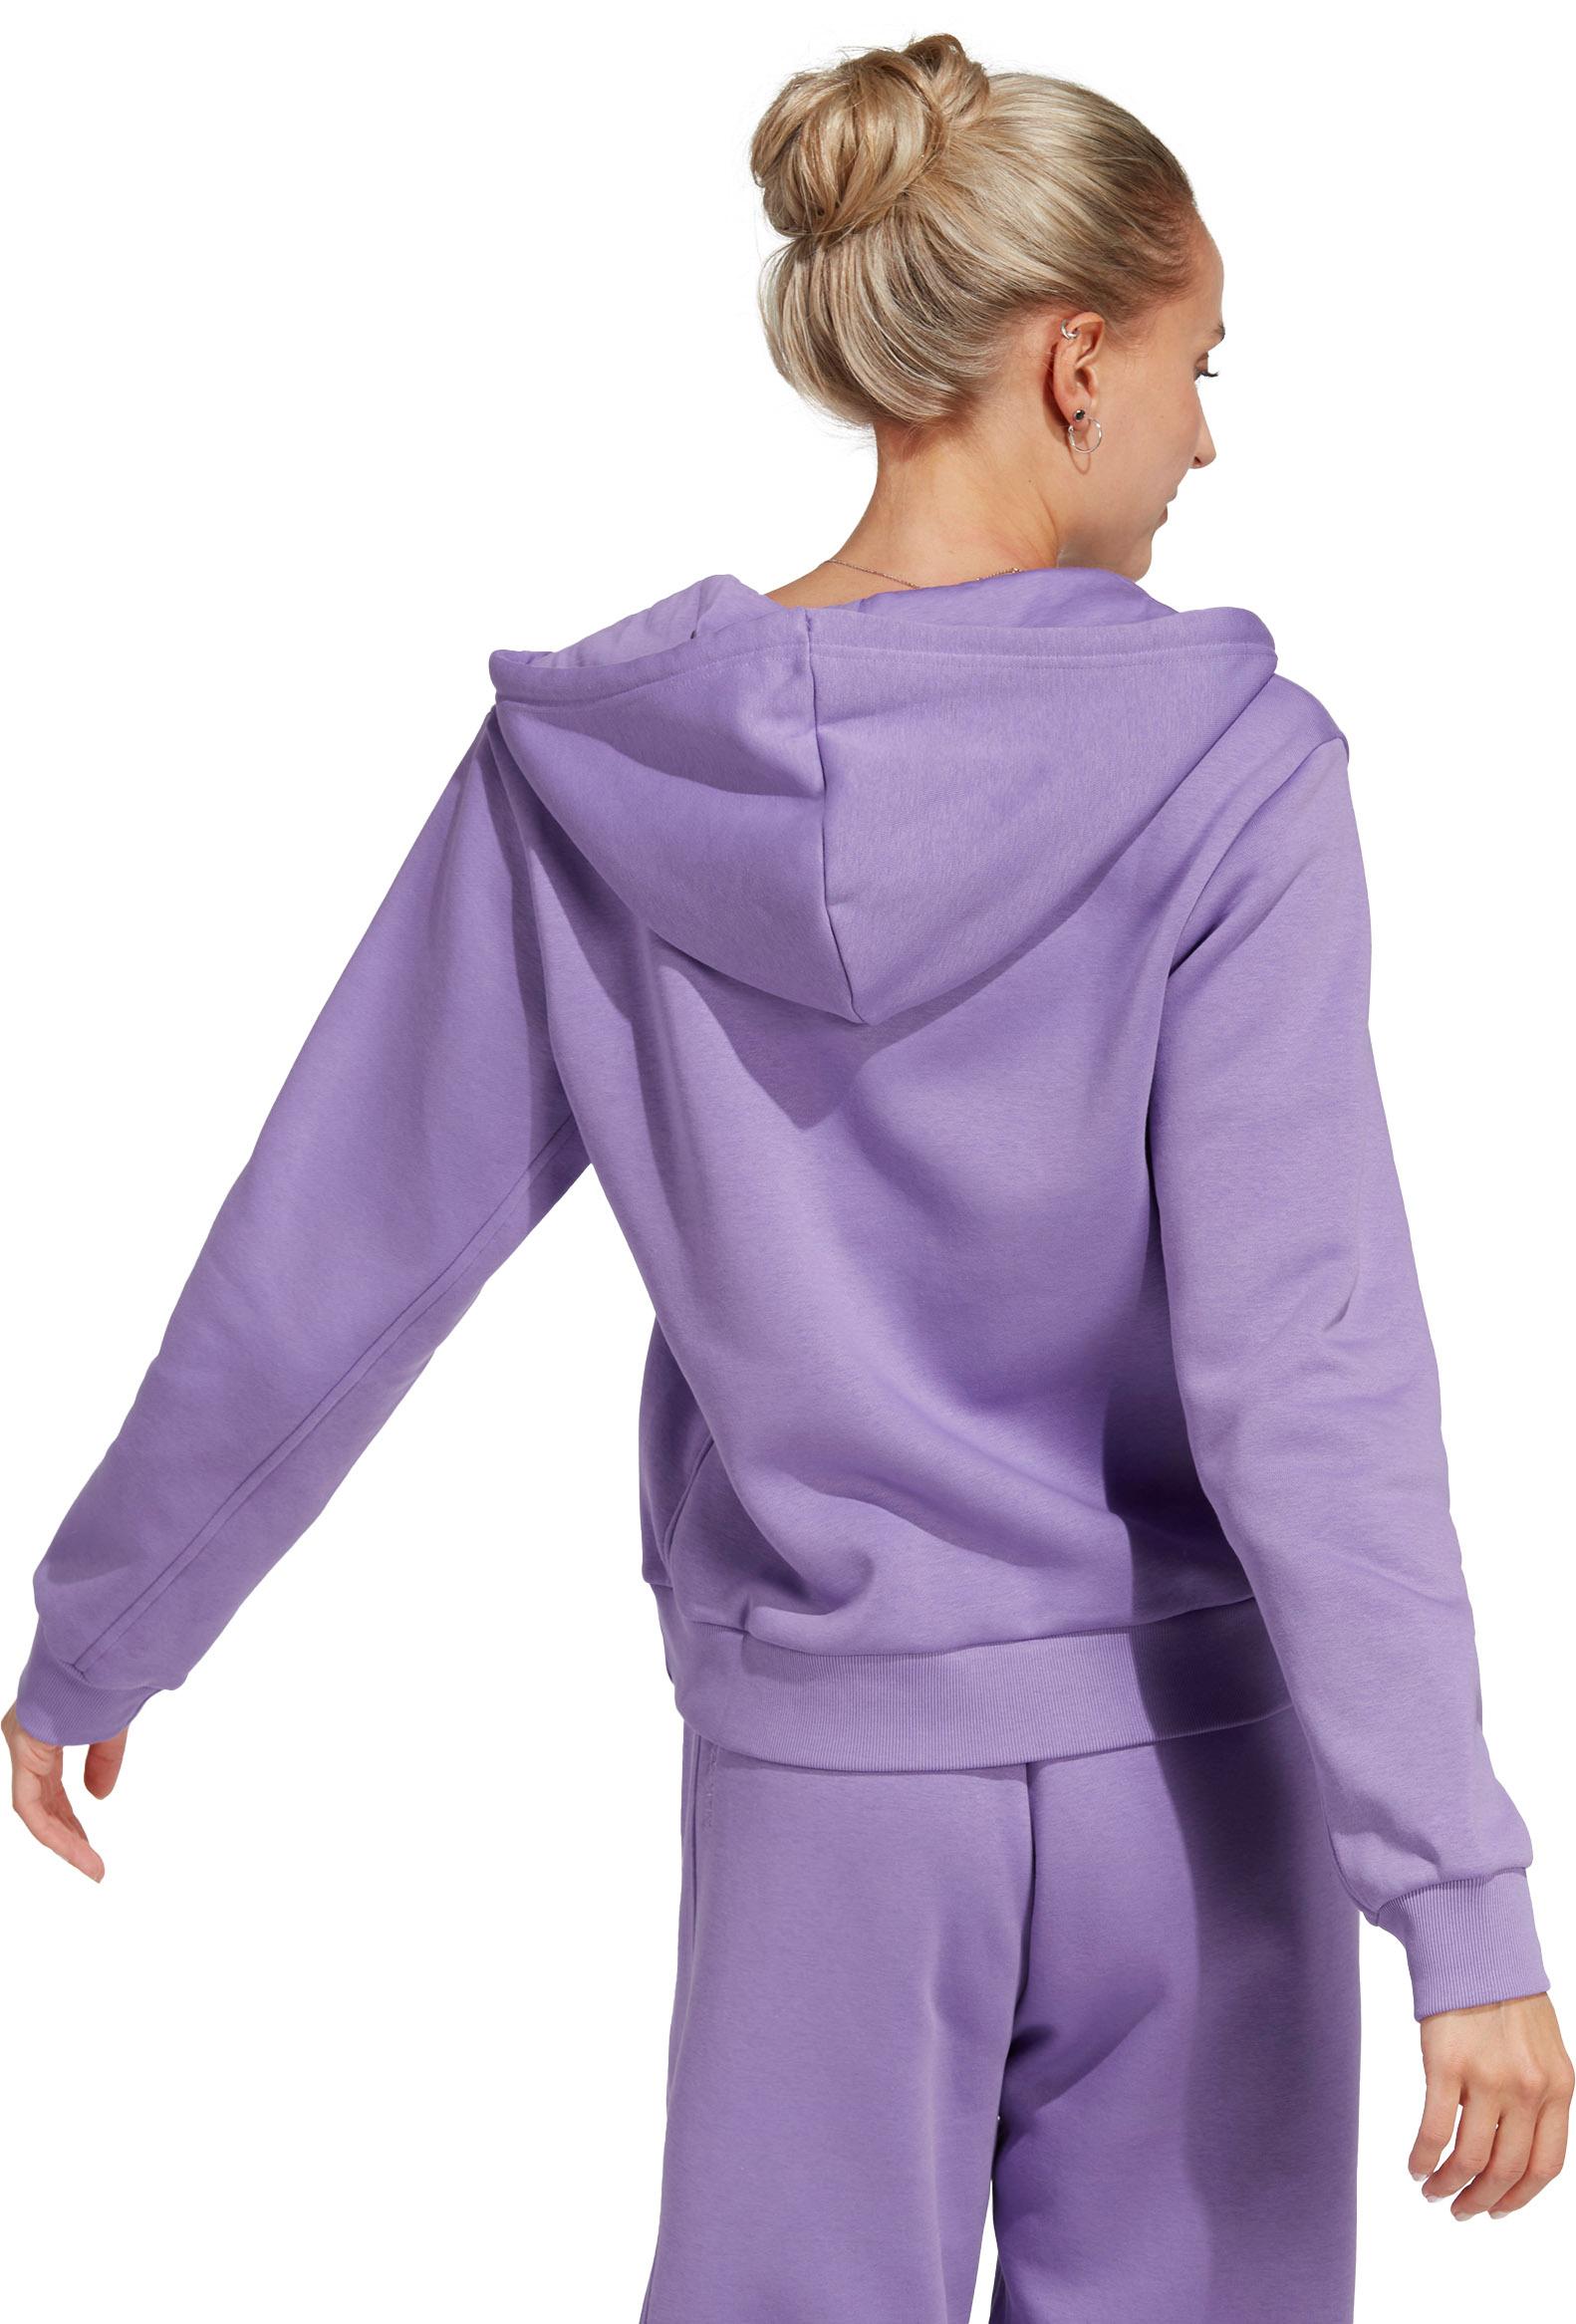 Adidas All Szn Sweatjacke Damen Online violet Shop SportScheck kaufen im fusion von